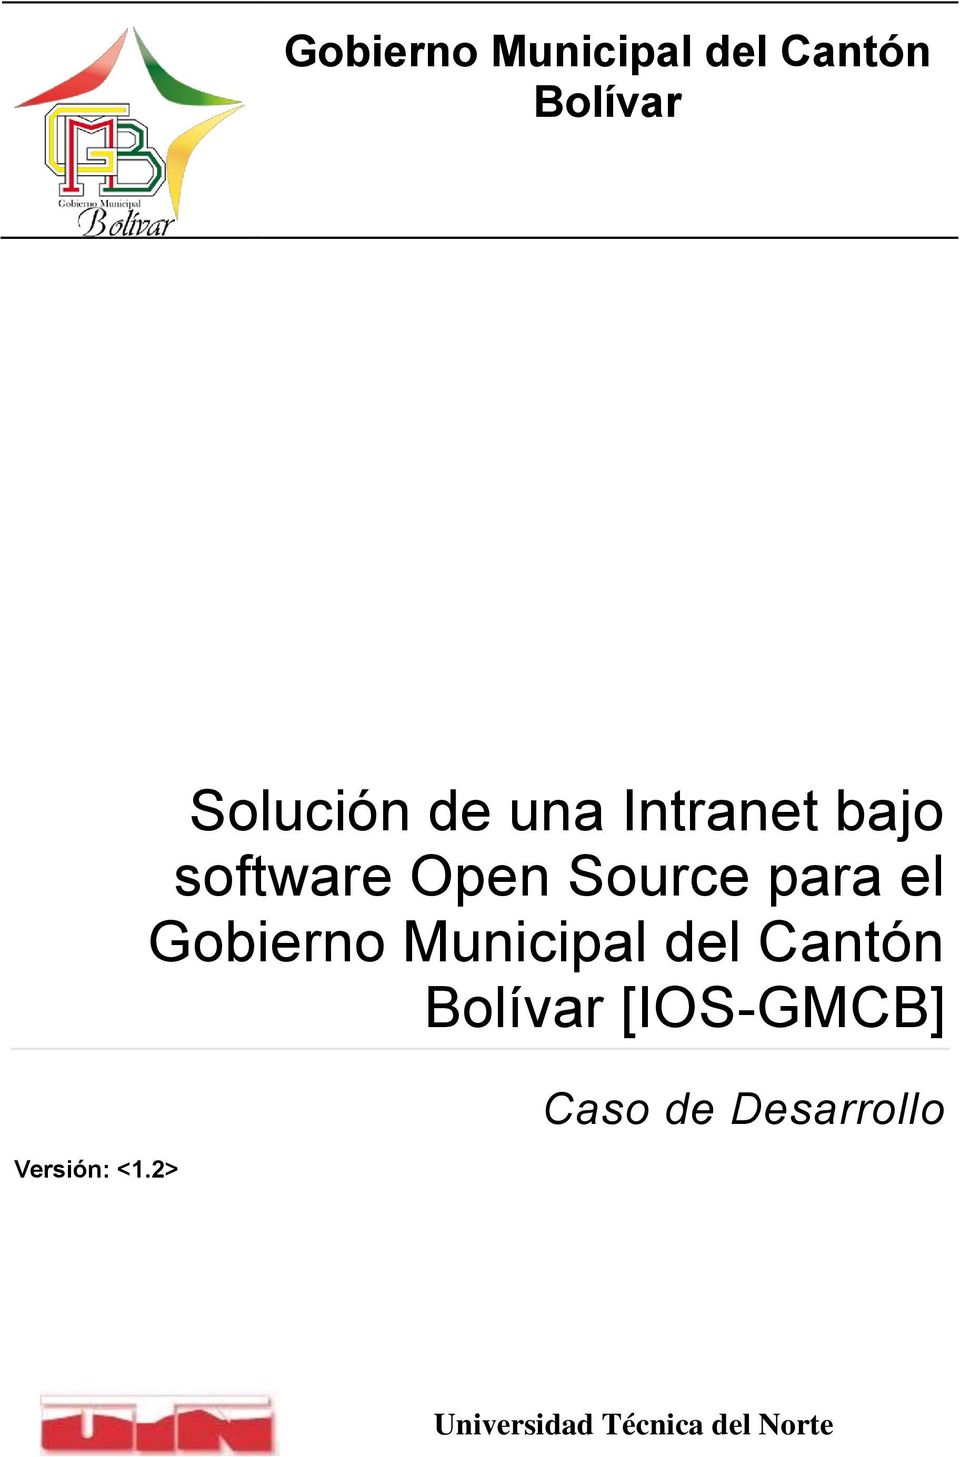 Source para el Gobierno Municipal del Cantón Bolívar